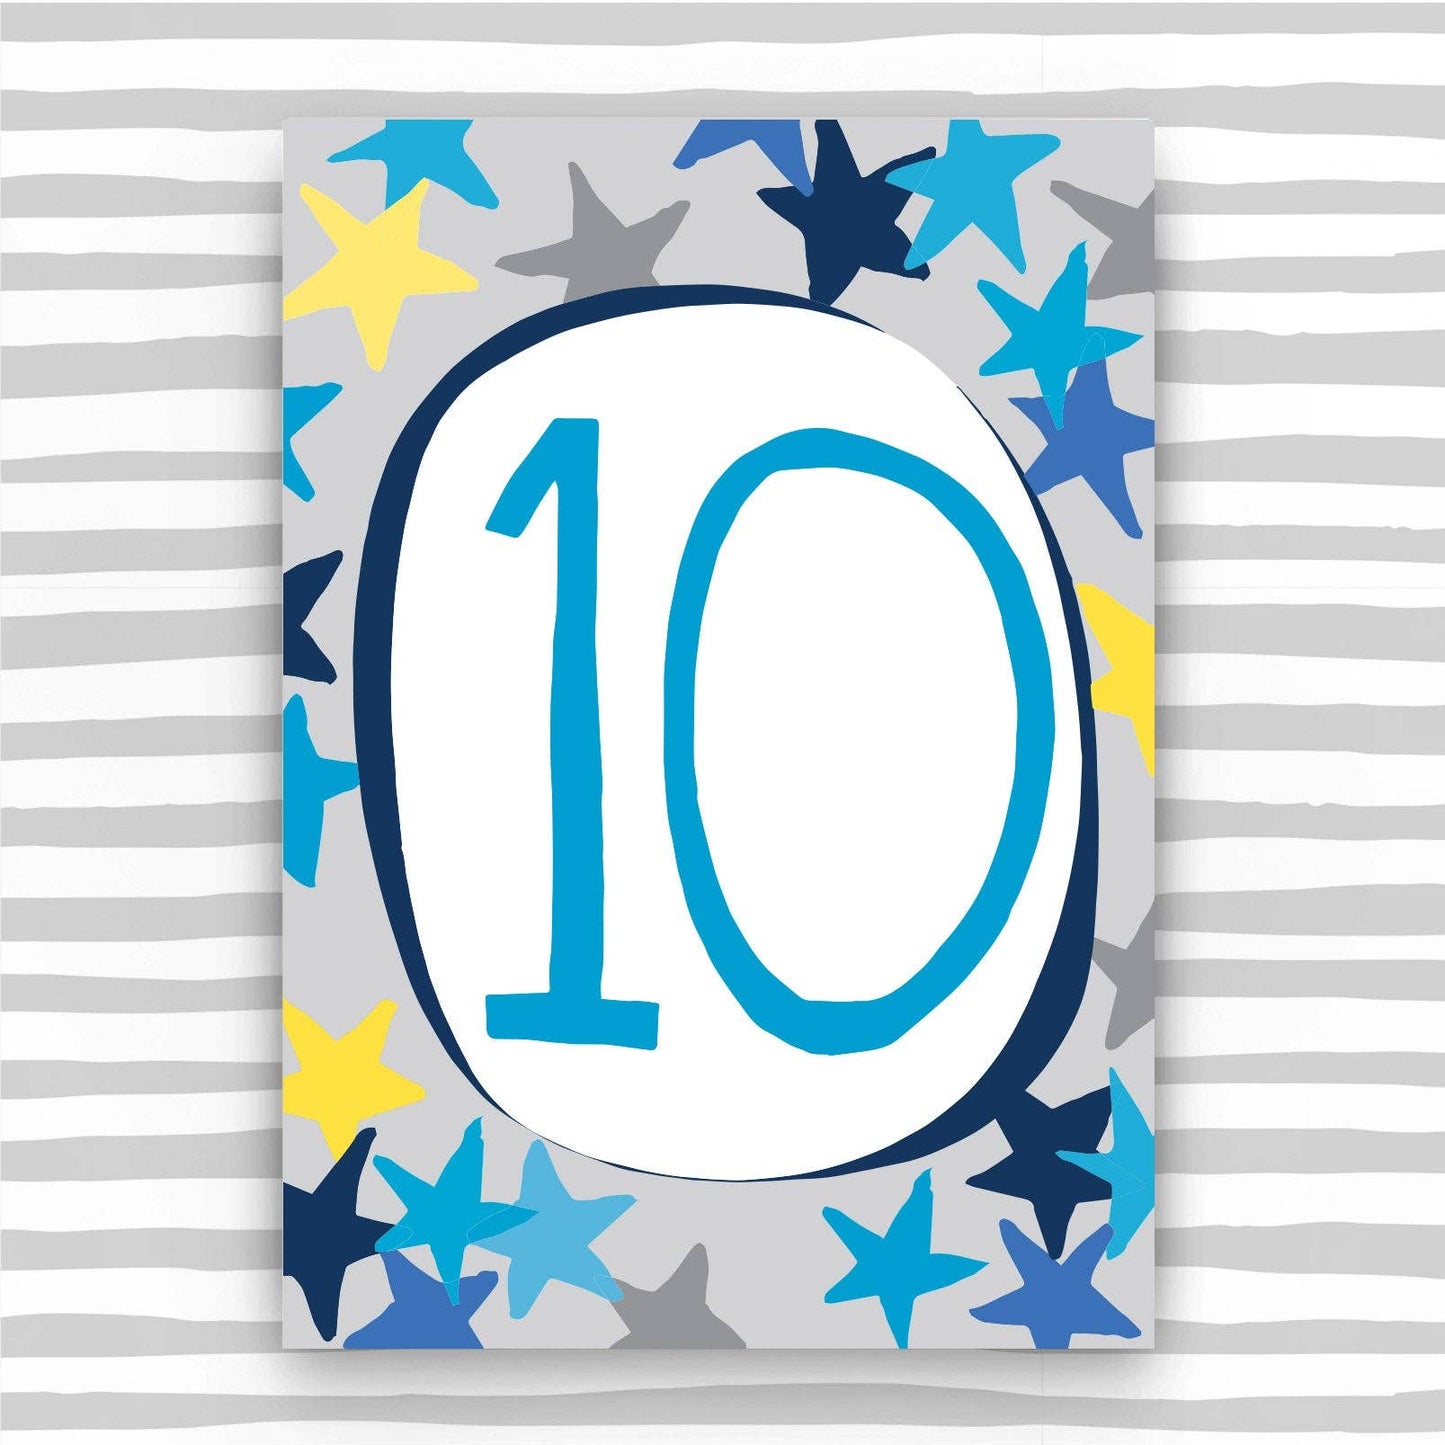 10th Birthday Card For A Boy - Boy Age 10 Birthday Card